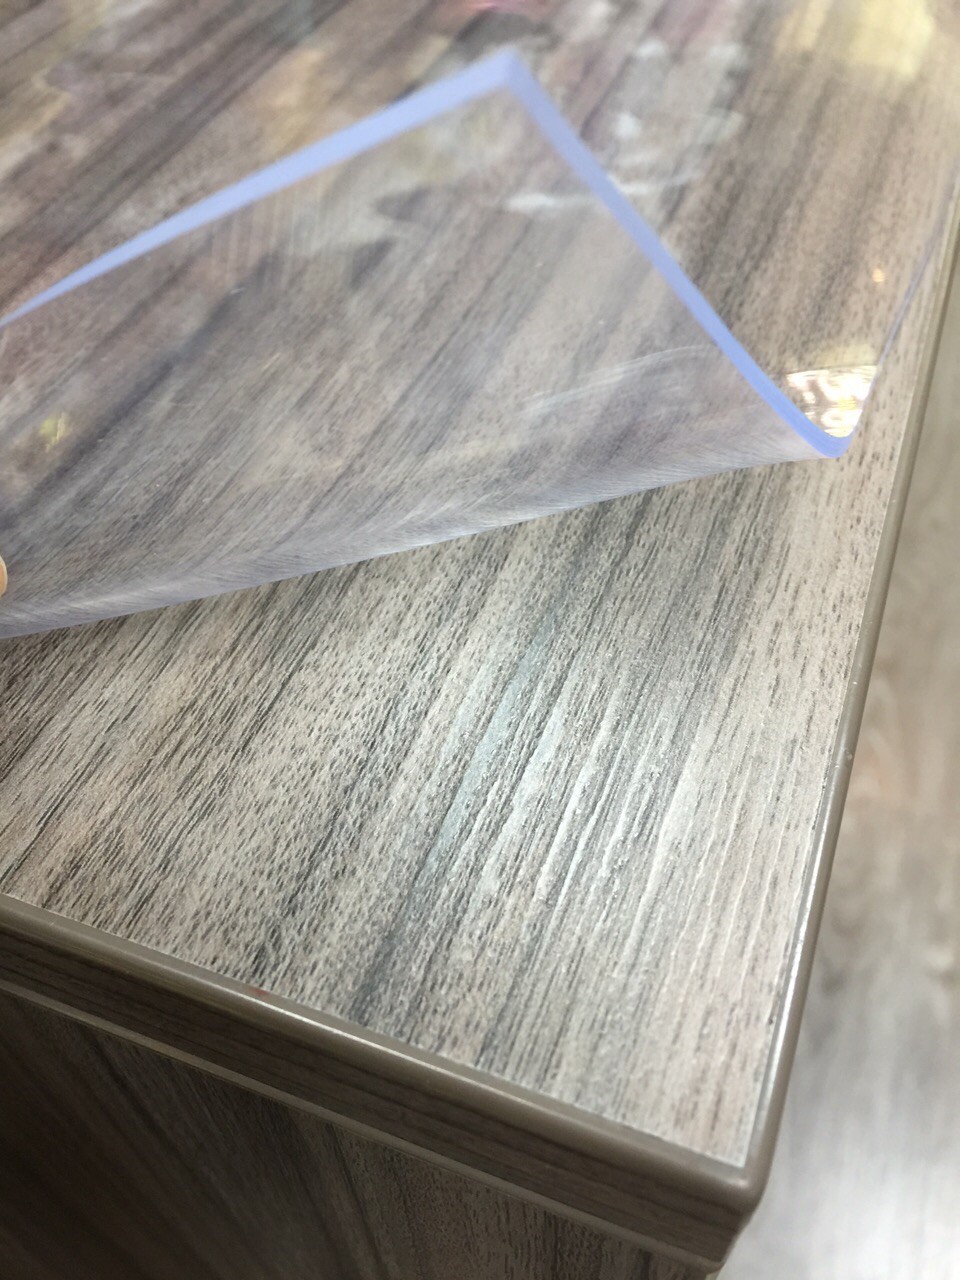 Выбираем защитное стекло на стол, которое предупредит порчу мебели